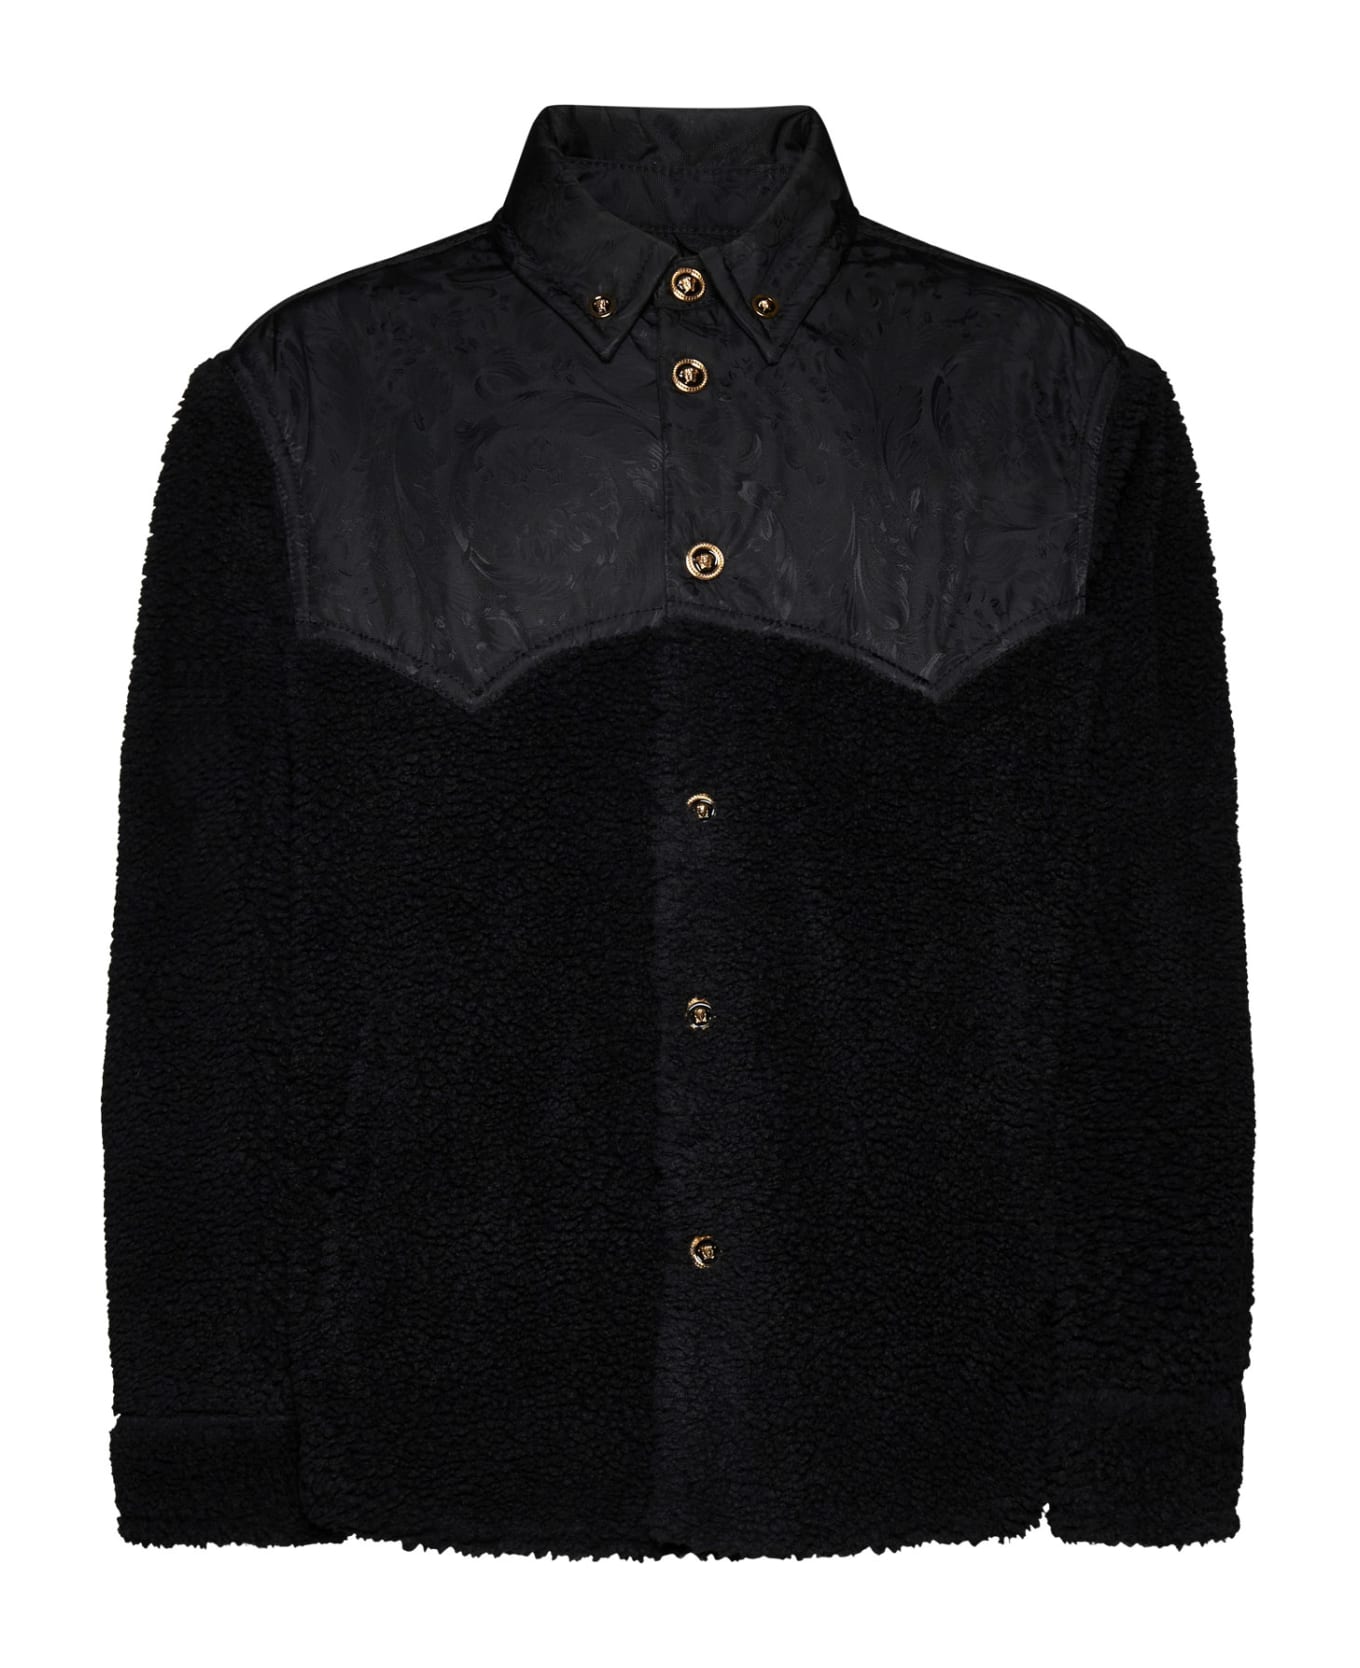 Versace Black Fleece Jacket - Black